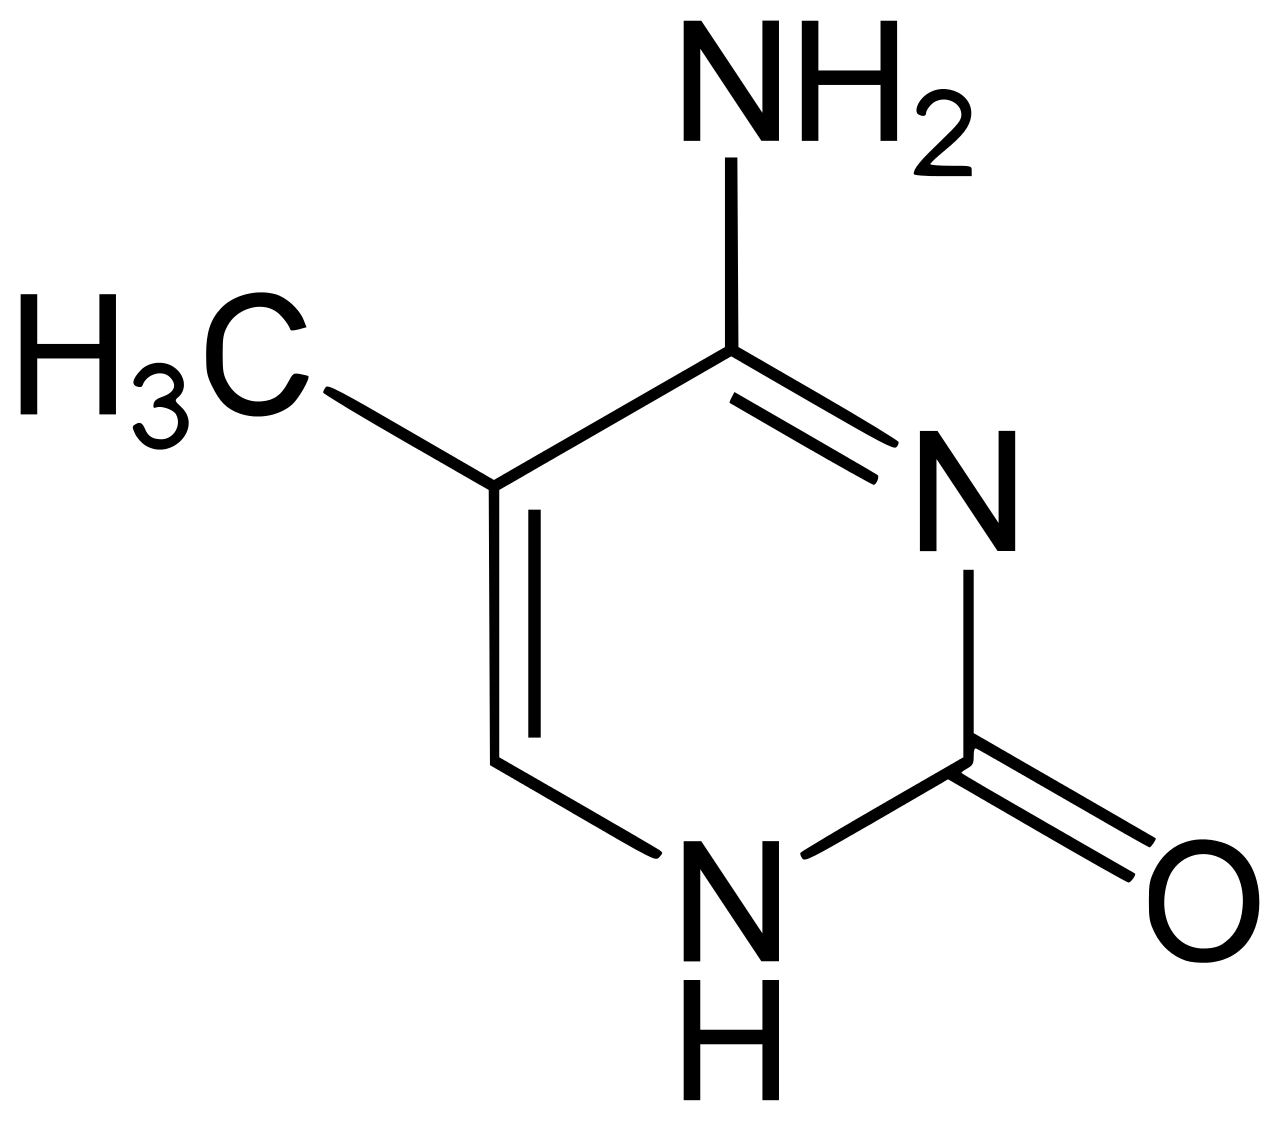 methylated cytosine diagram